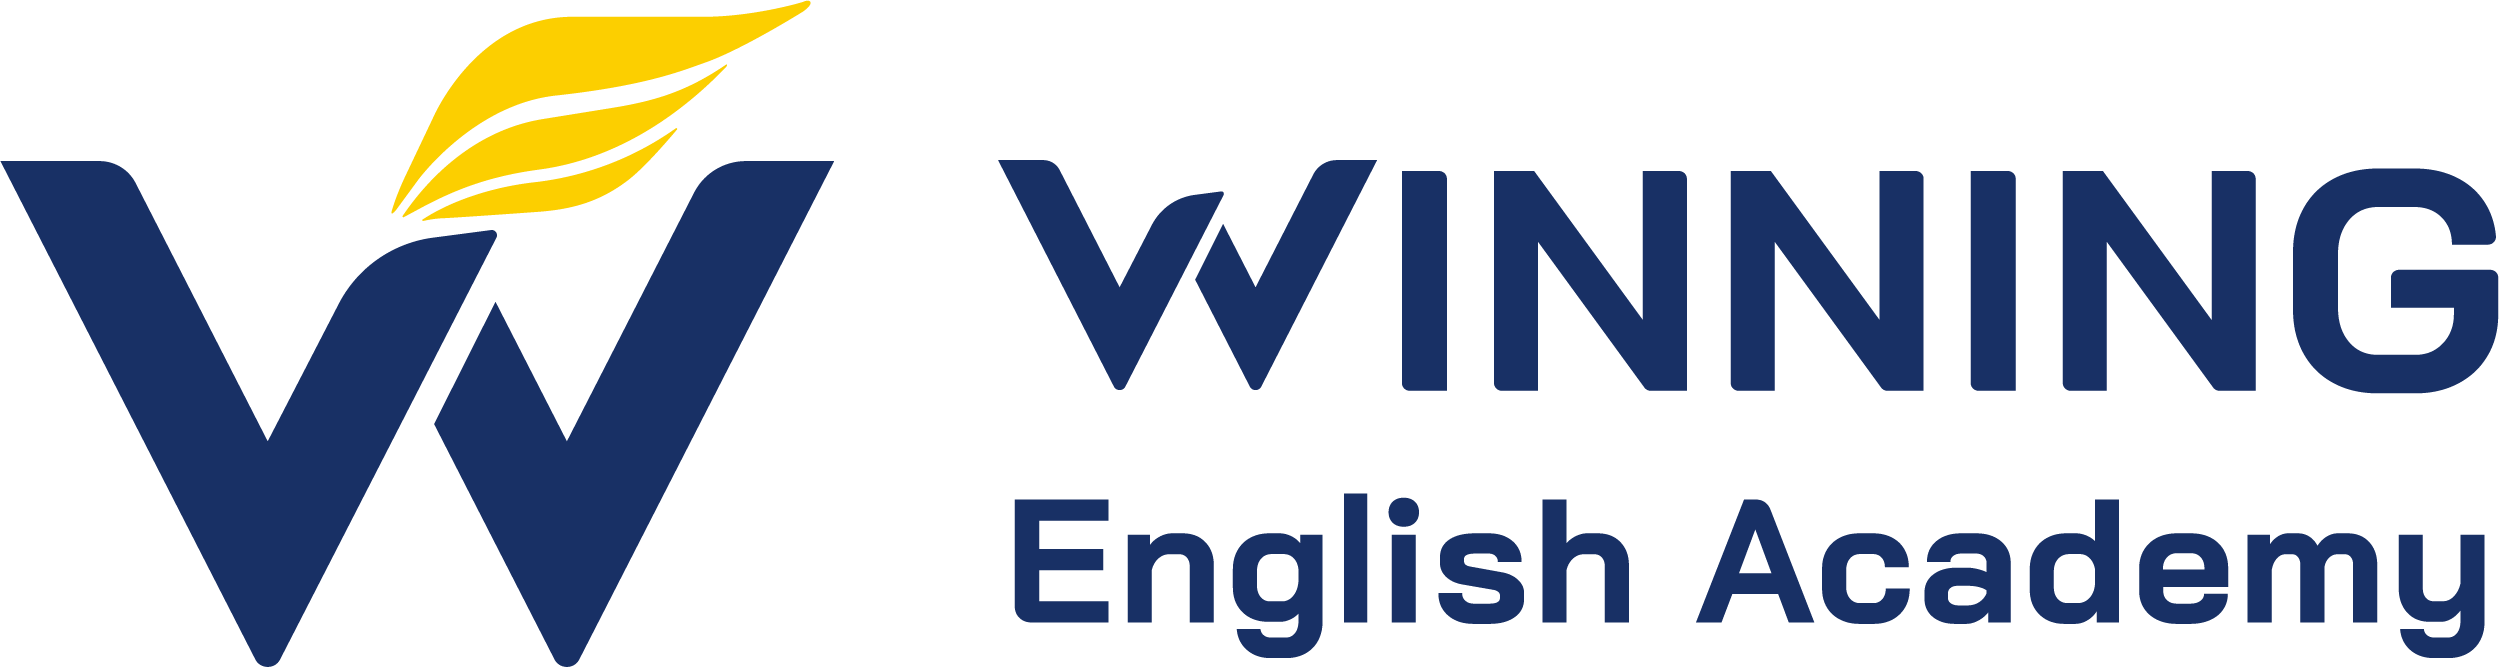 Winning English Academy